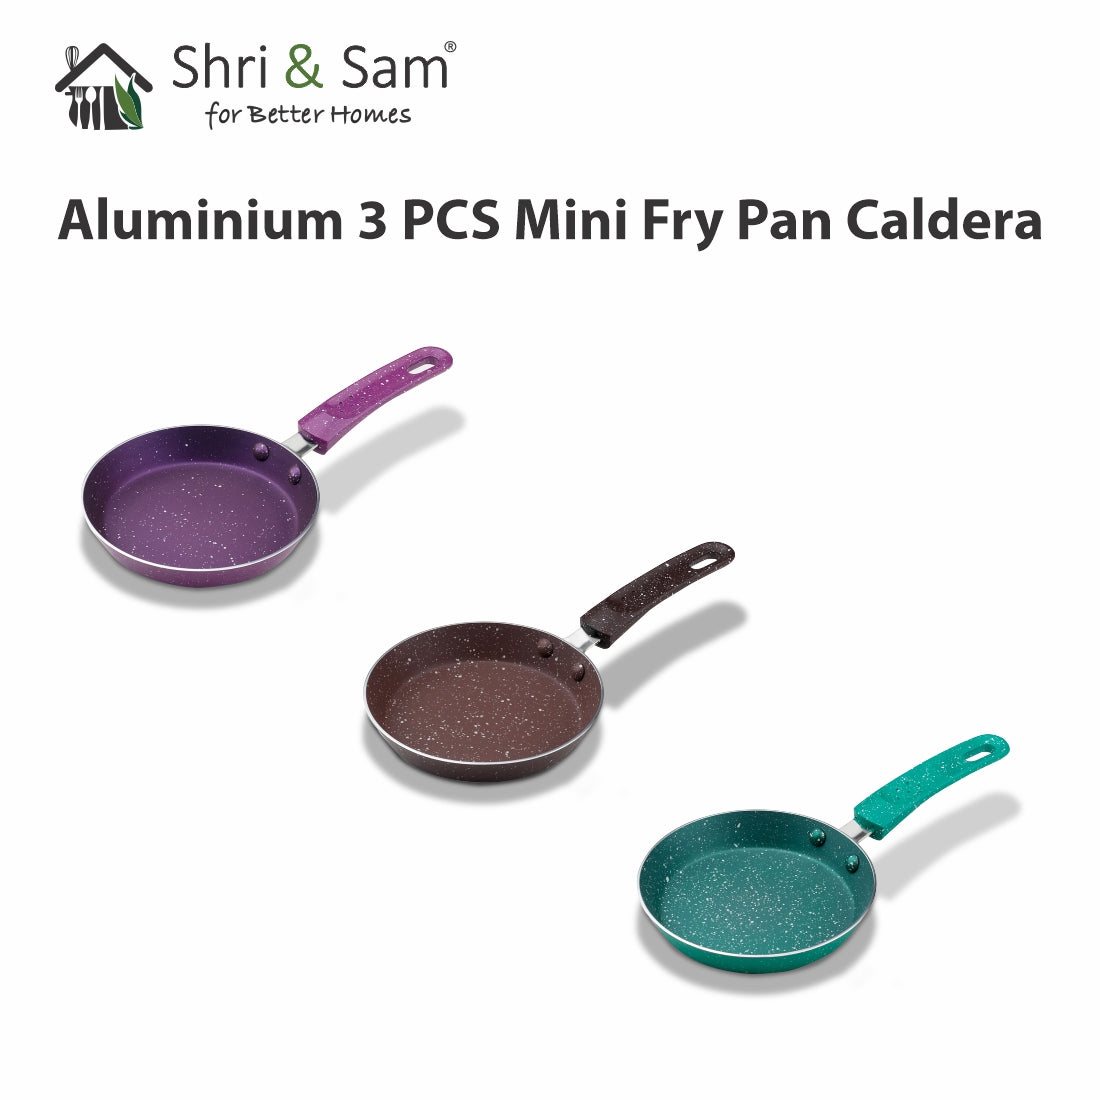 Aluminium 3 PCS Mini Fry Pan Caldera